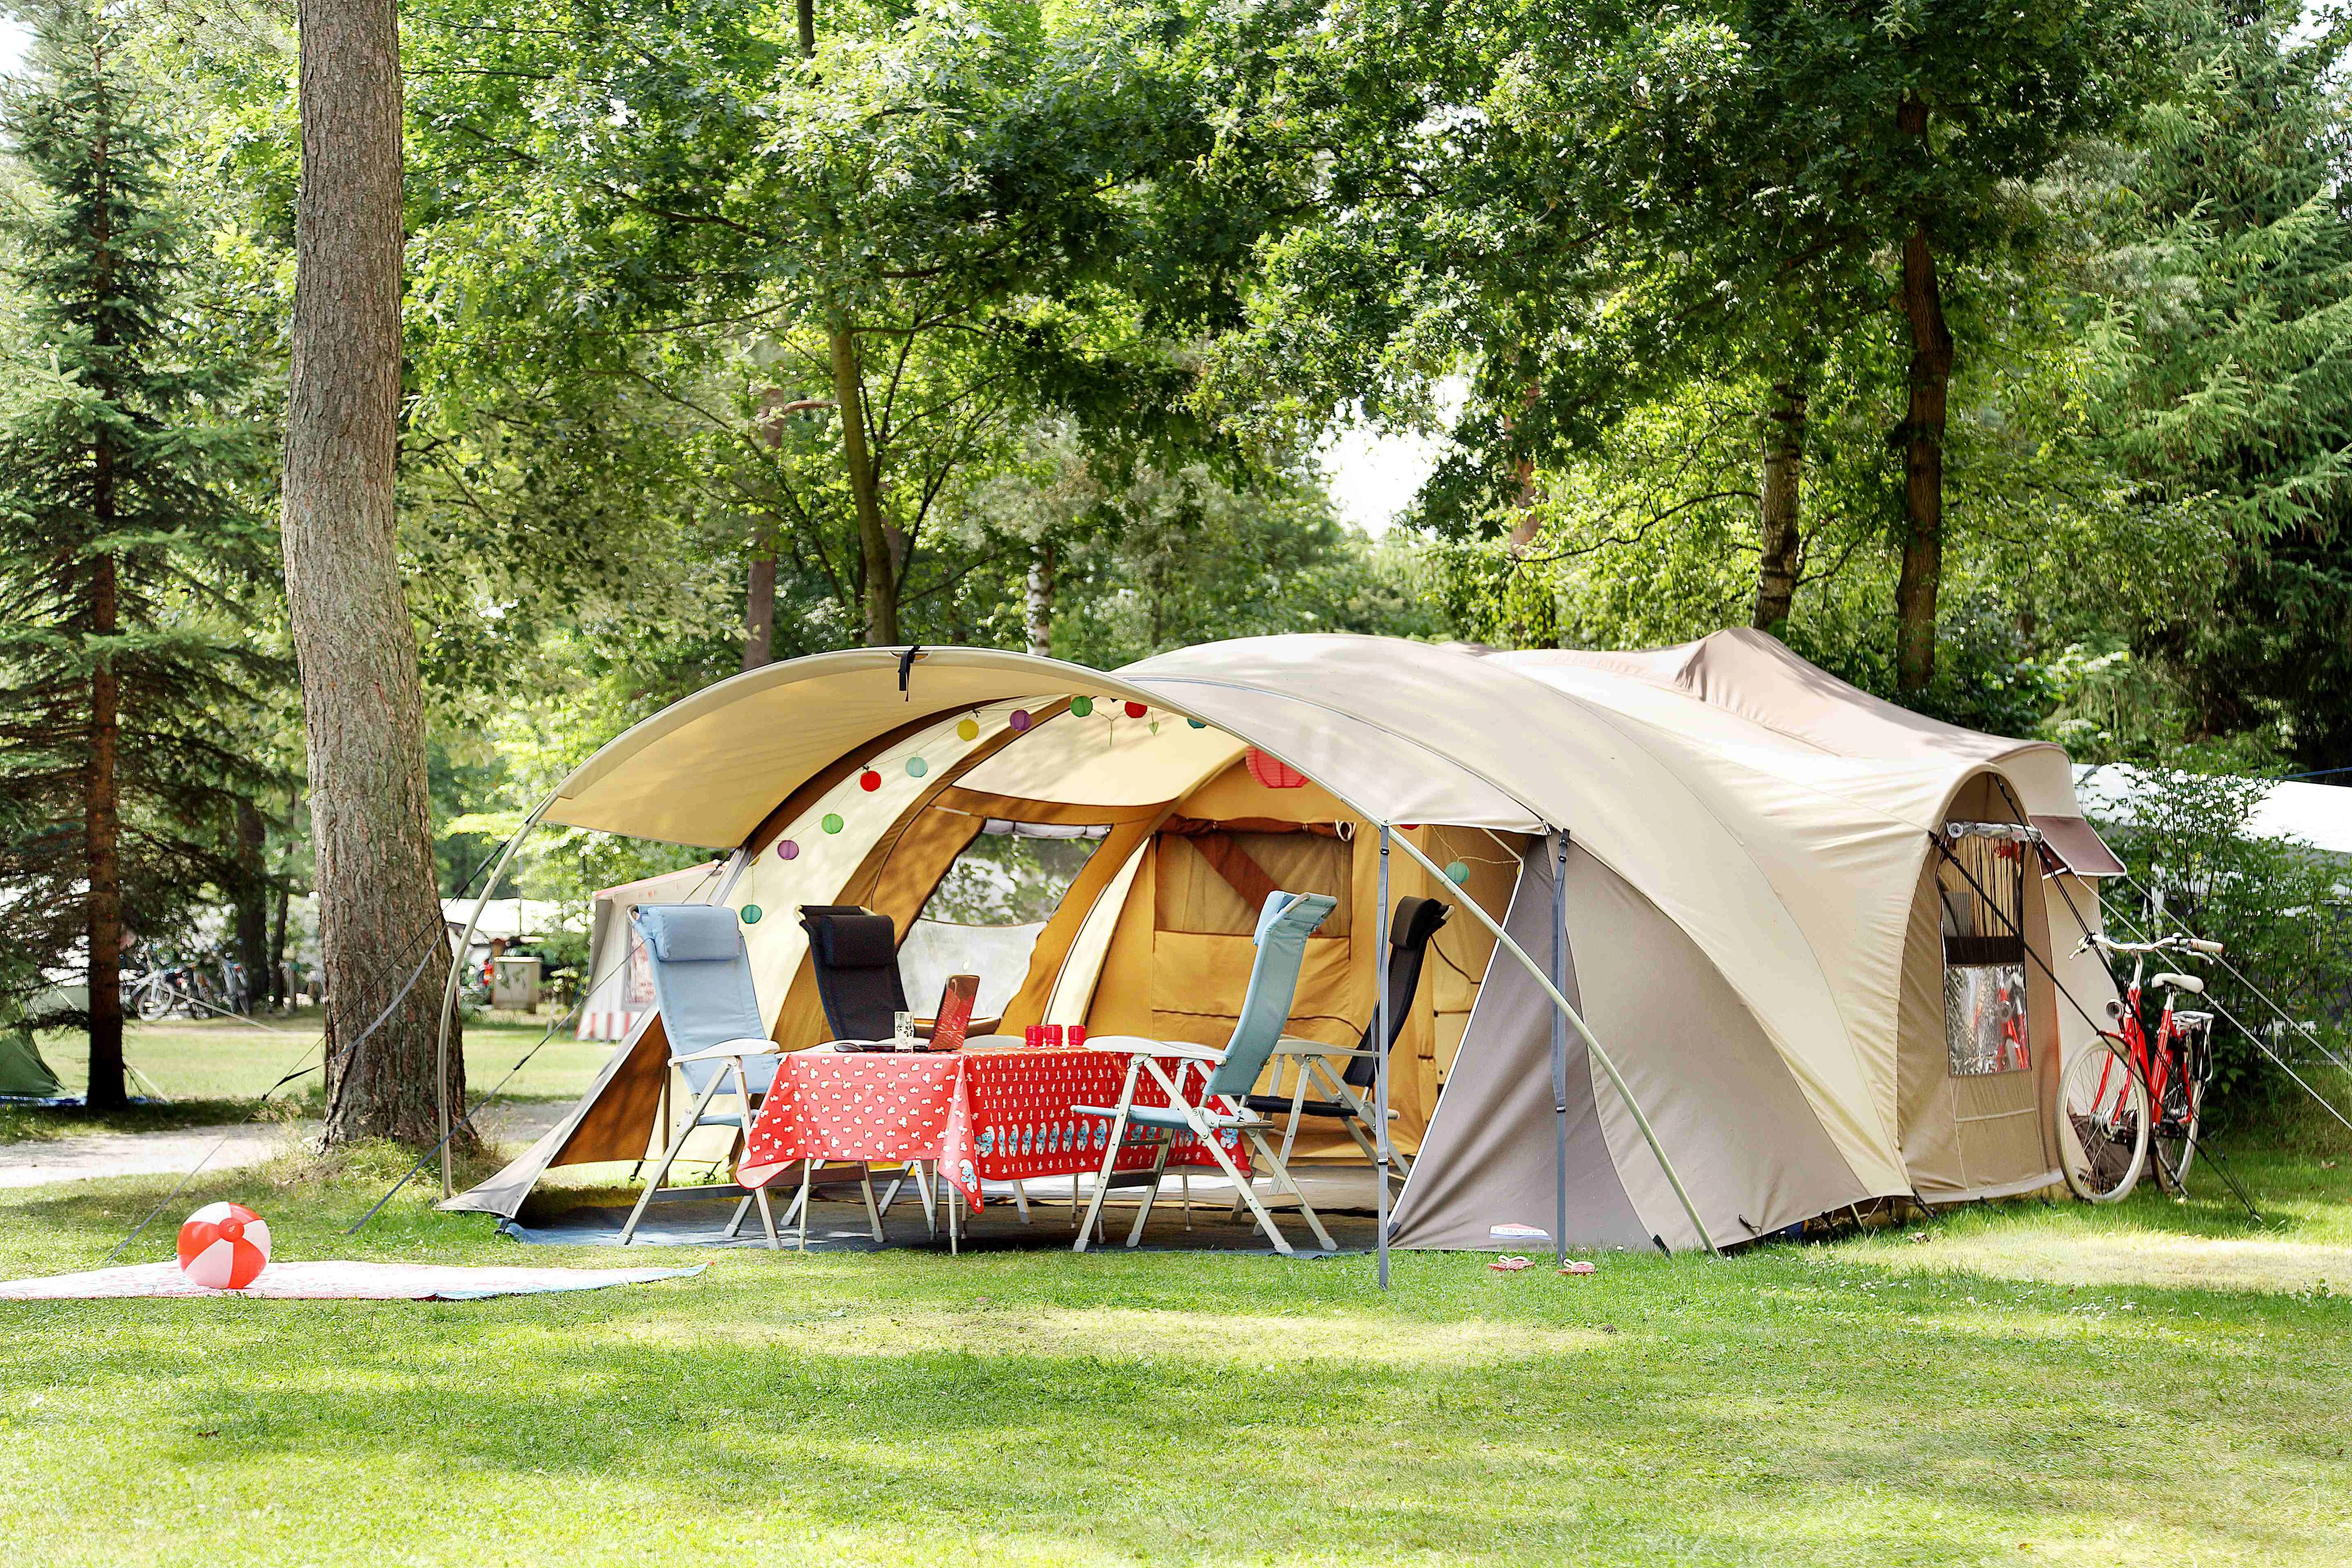 Camping platform. Лагерь модульный (шатер и 2 палатки) Nash Base Camp. Палатки для кемпинга. Палаточный кемпинг. Кемпинг на природе.